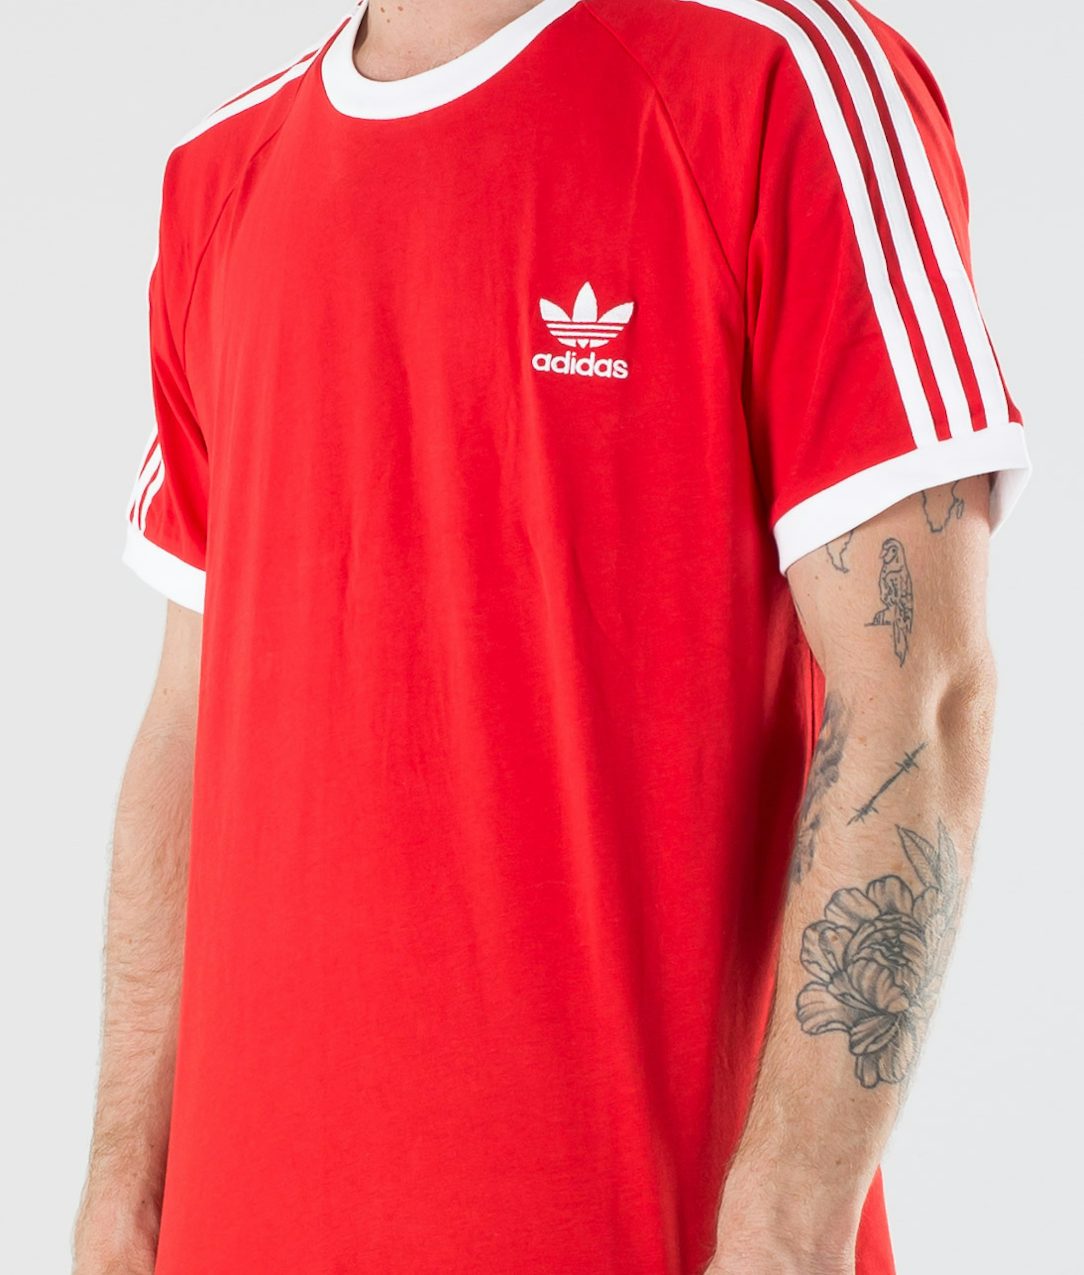 Adidas Originals 3 Stripes Tee T Shirt Lush Red Ridestore Com